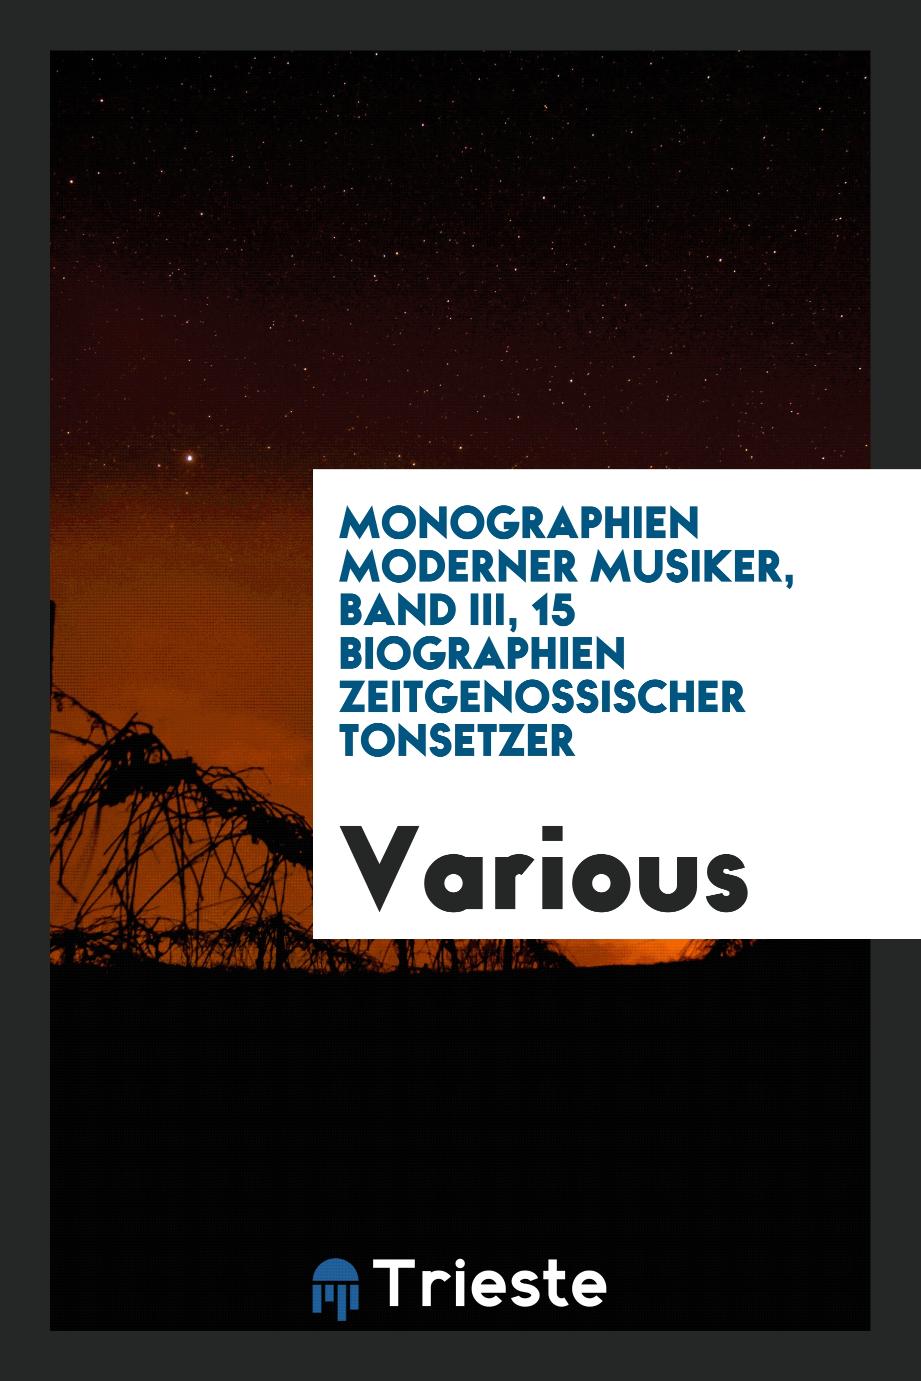 Monographien moderner musiker, Band III, 15 biographien zeitgenossischer Tonsetzer